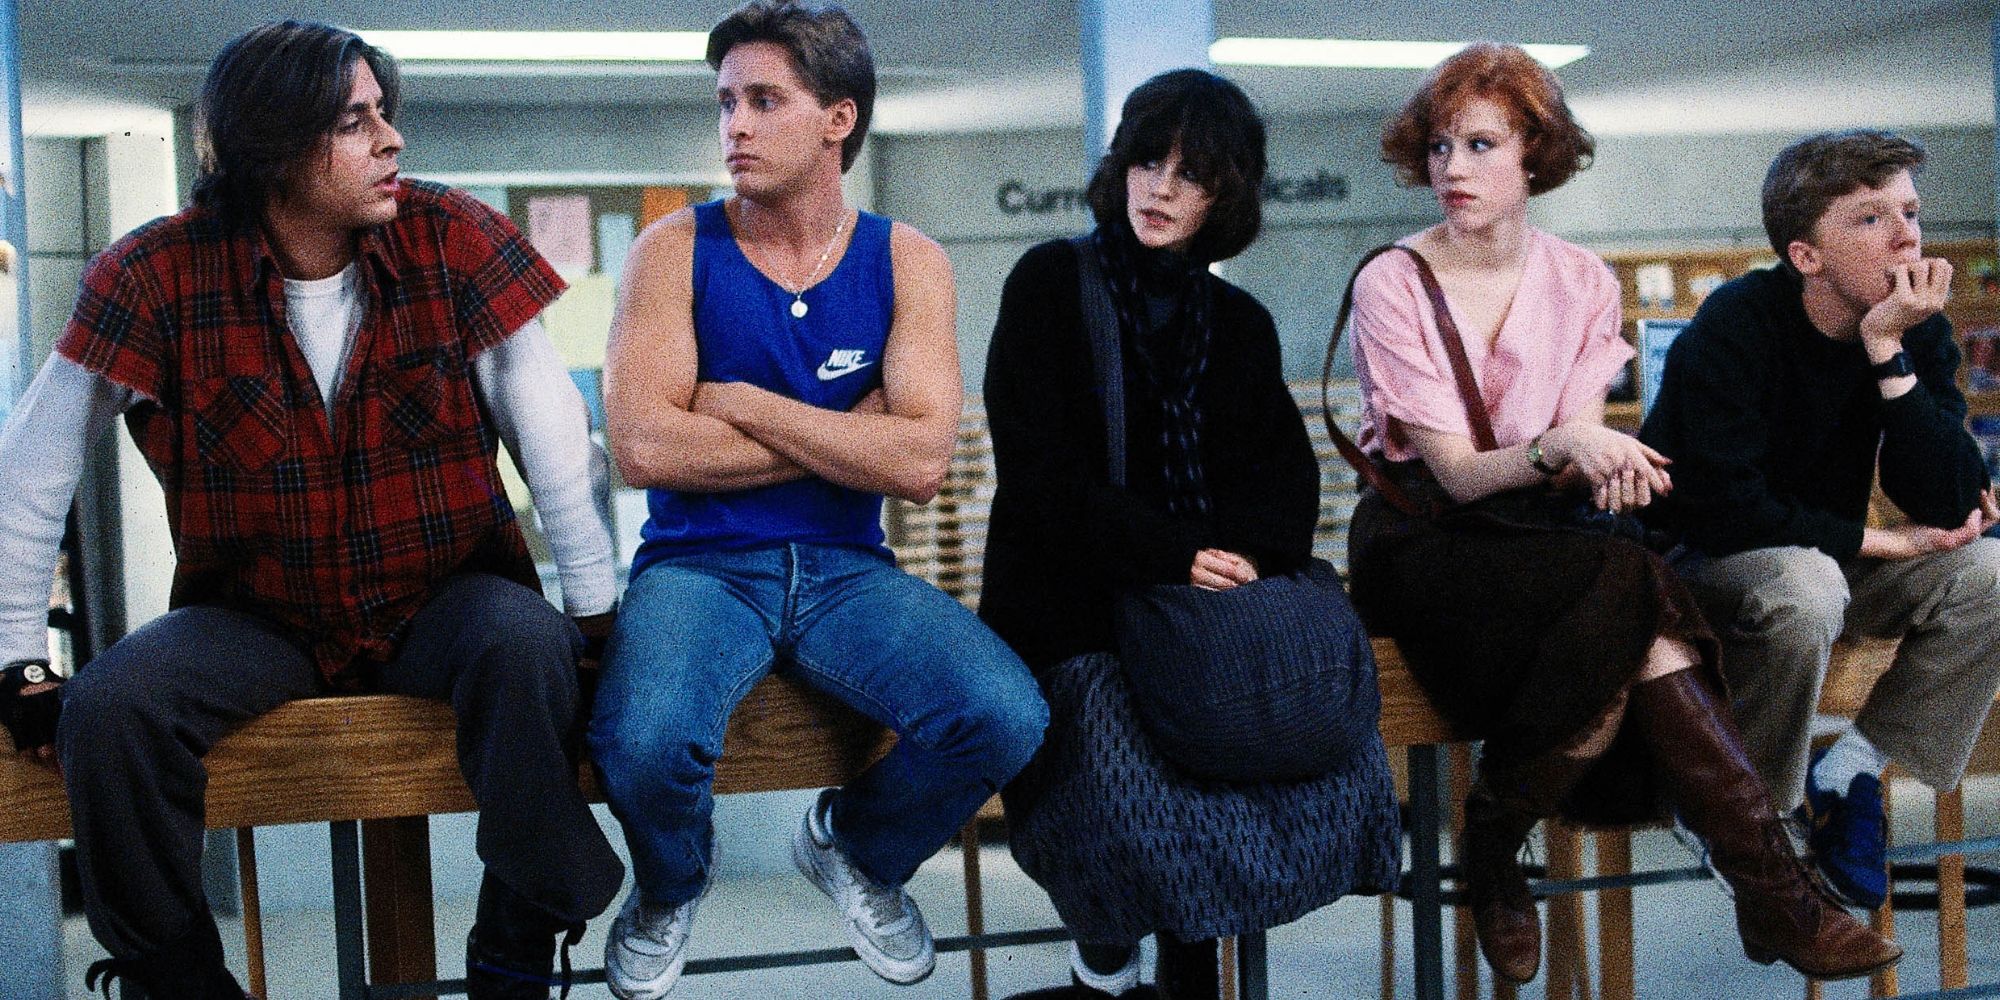 Le club du petit-déjeuner assis dans 'The Breakfast Club' (1985).